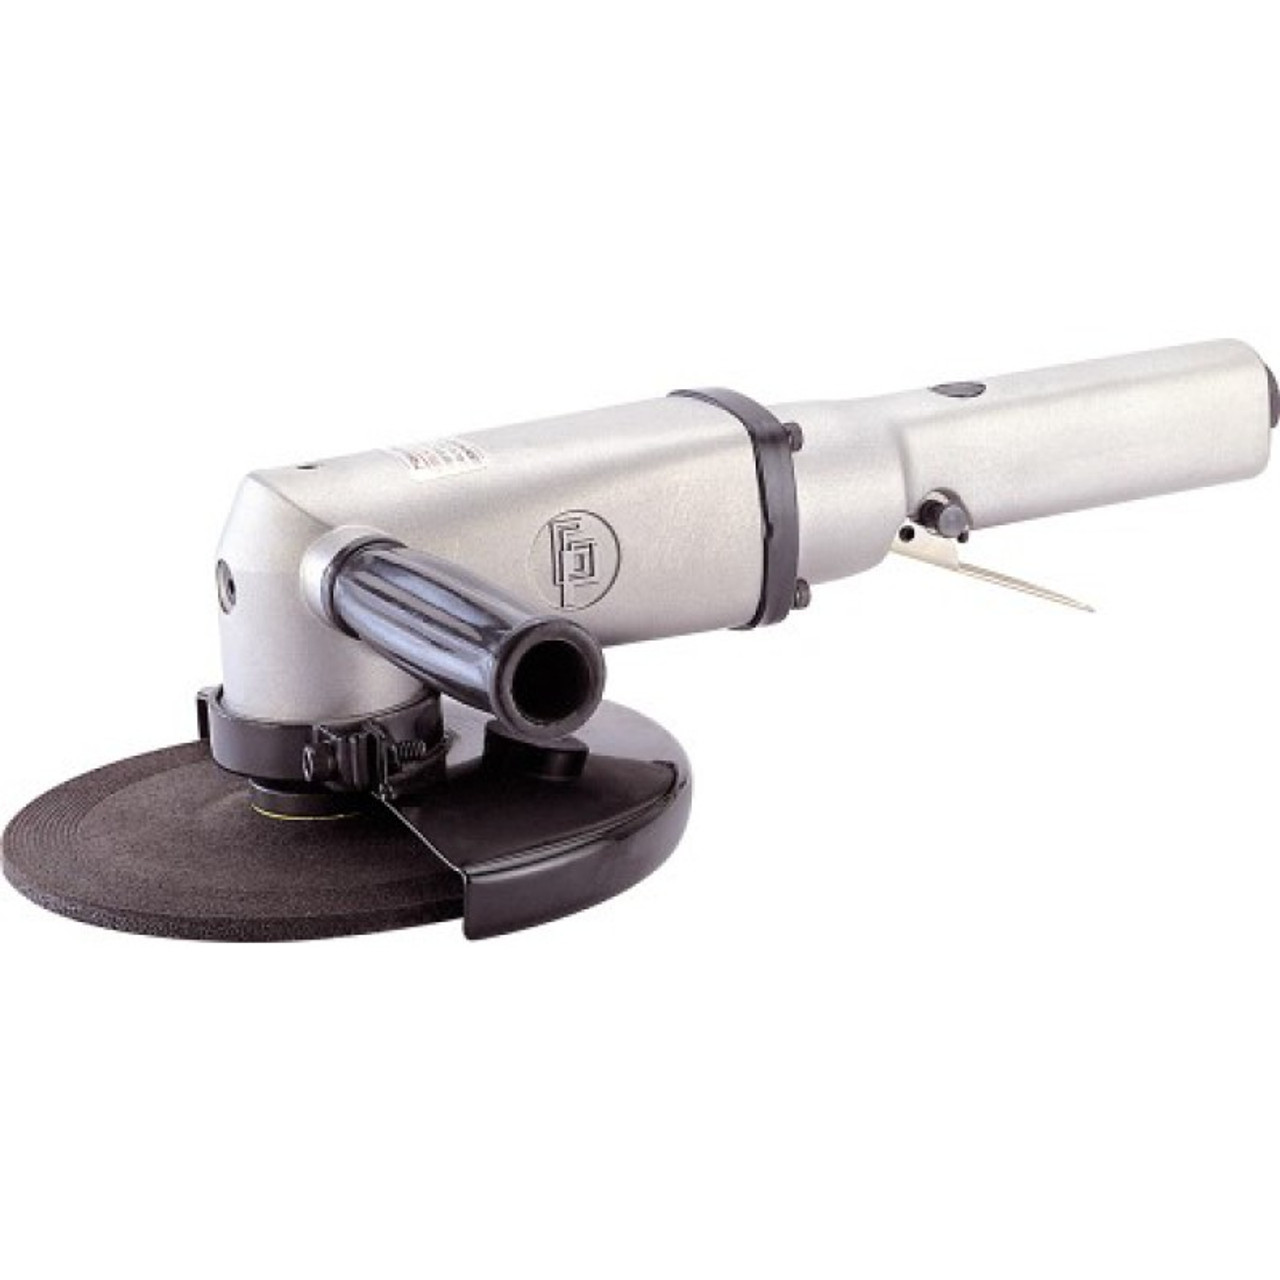 IMPA 590303 Vertical grinder pneumatic - 230mm USG-200E